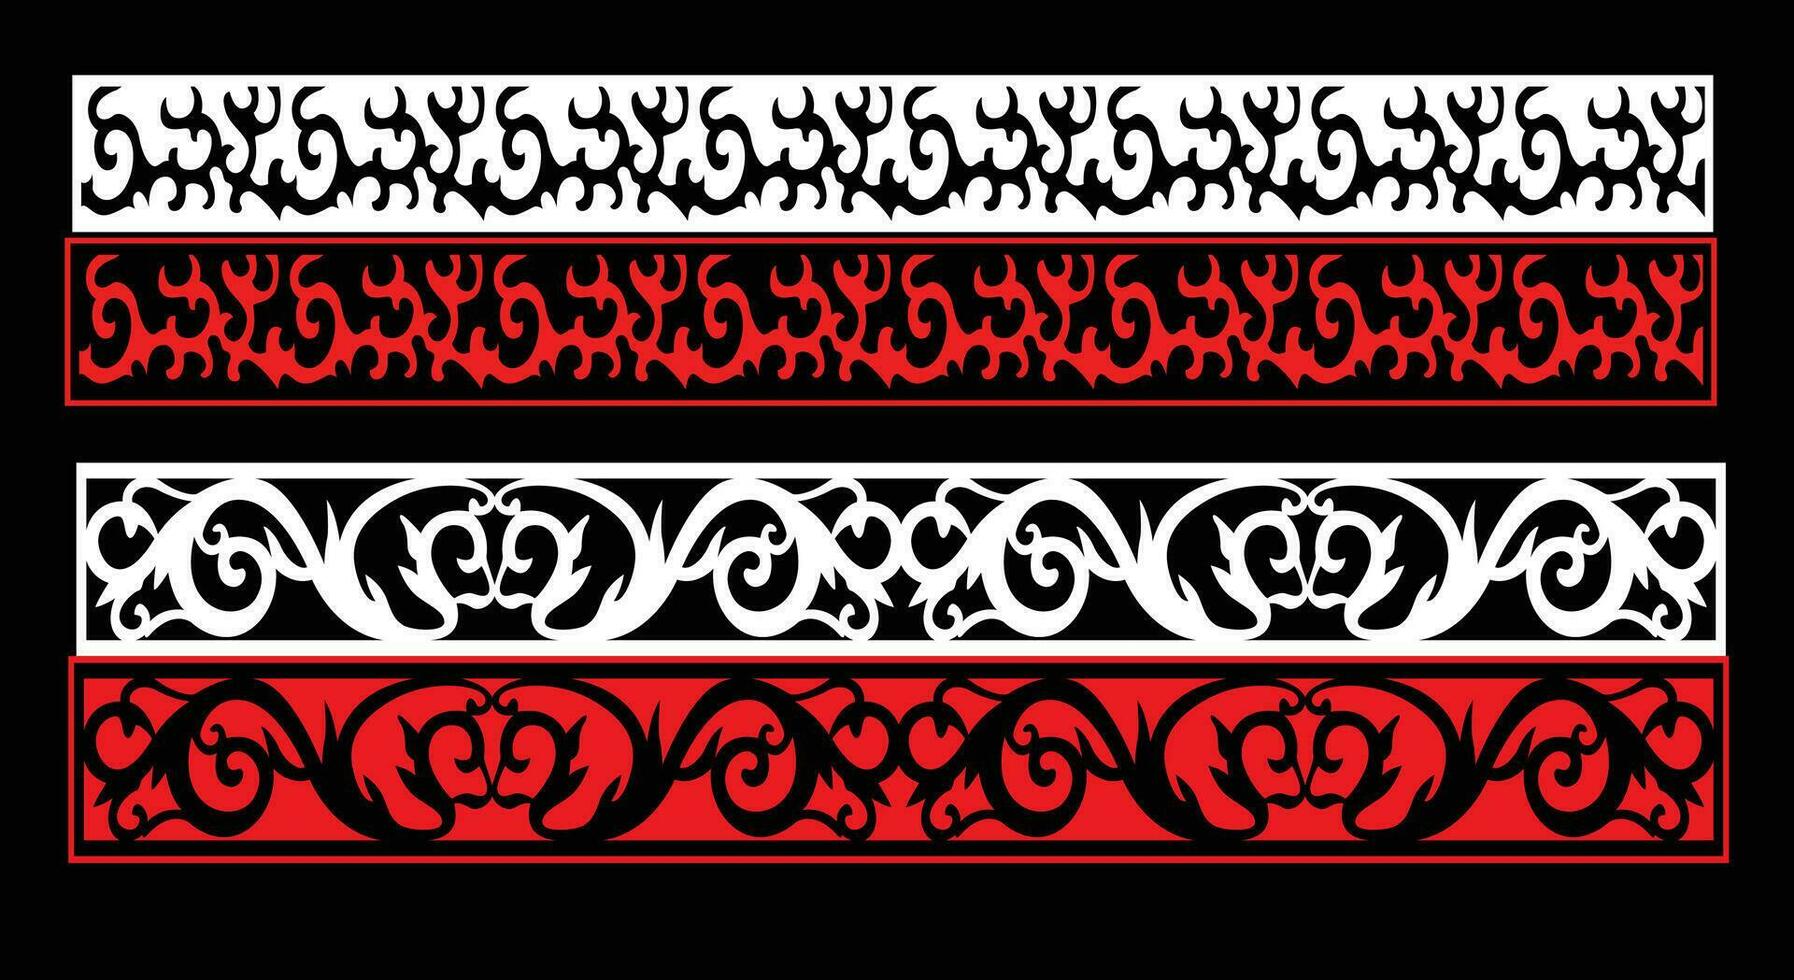 dekorativ Mauer Paneele einstellen jali Design cnc Muster, Laser- Schneiden Muster, Router cnccutting.jali Laser- Schnitt dekorativ Panel einstellen mit Spitze Muster vektor